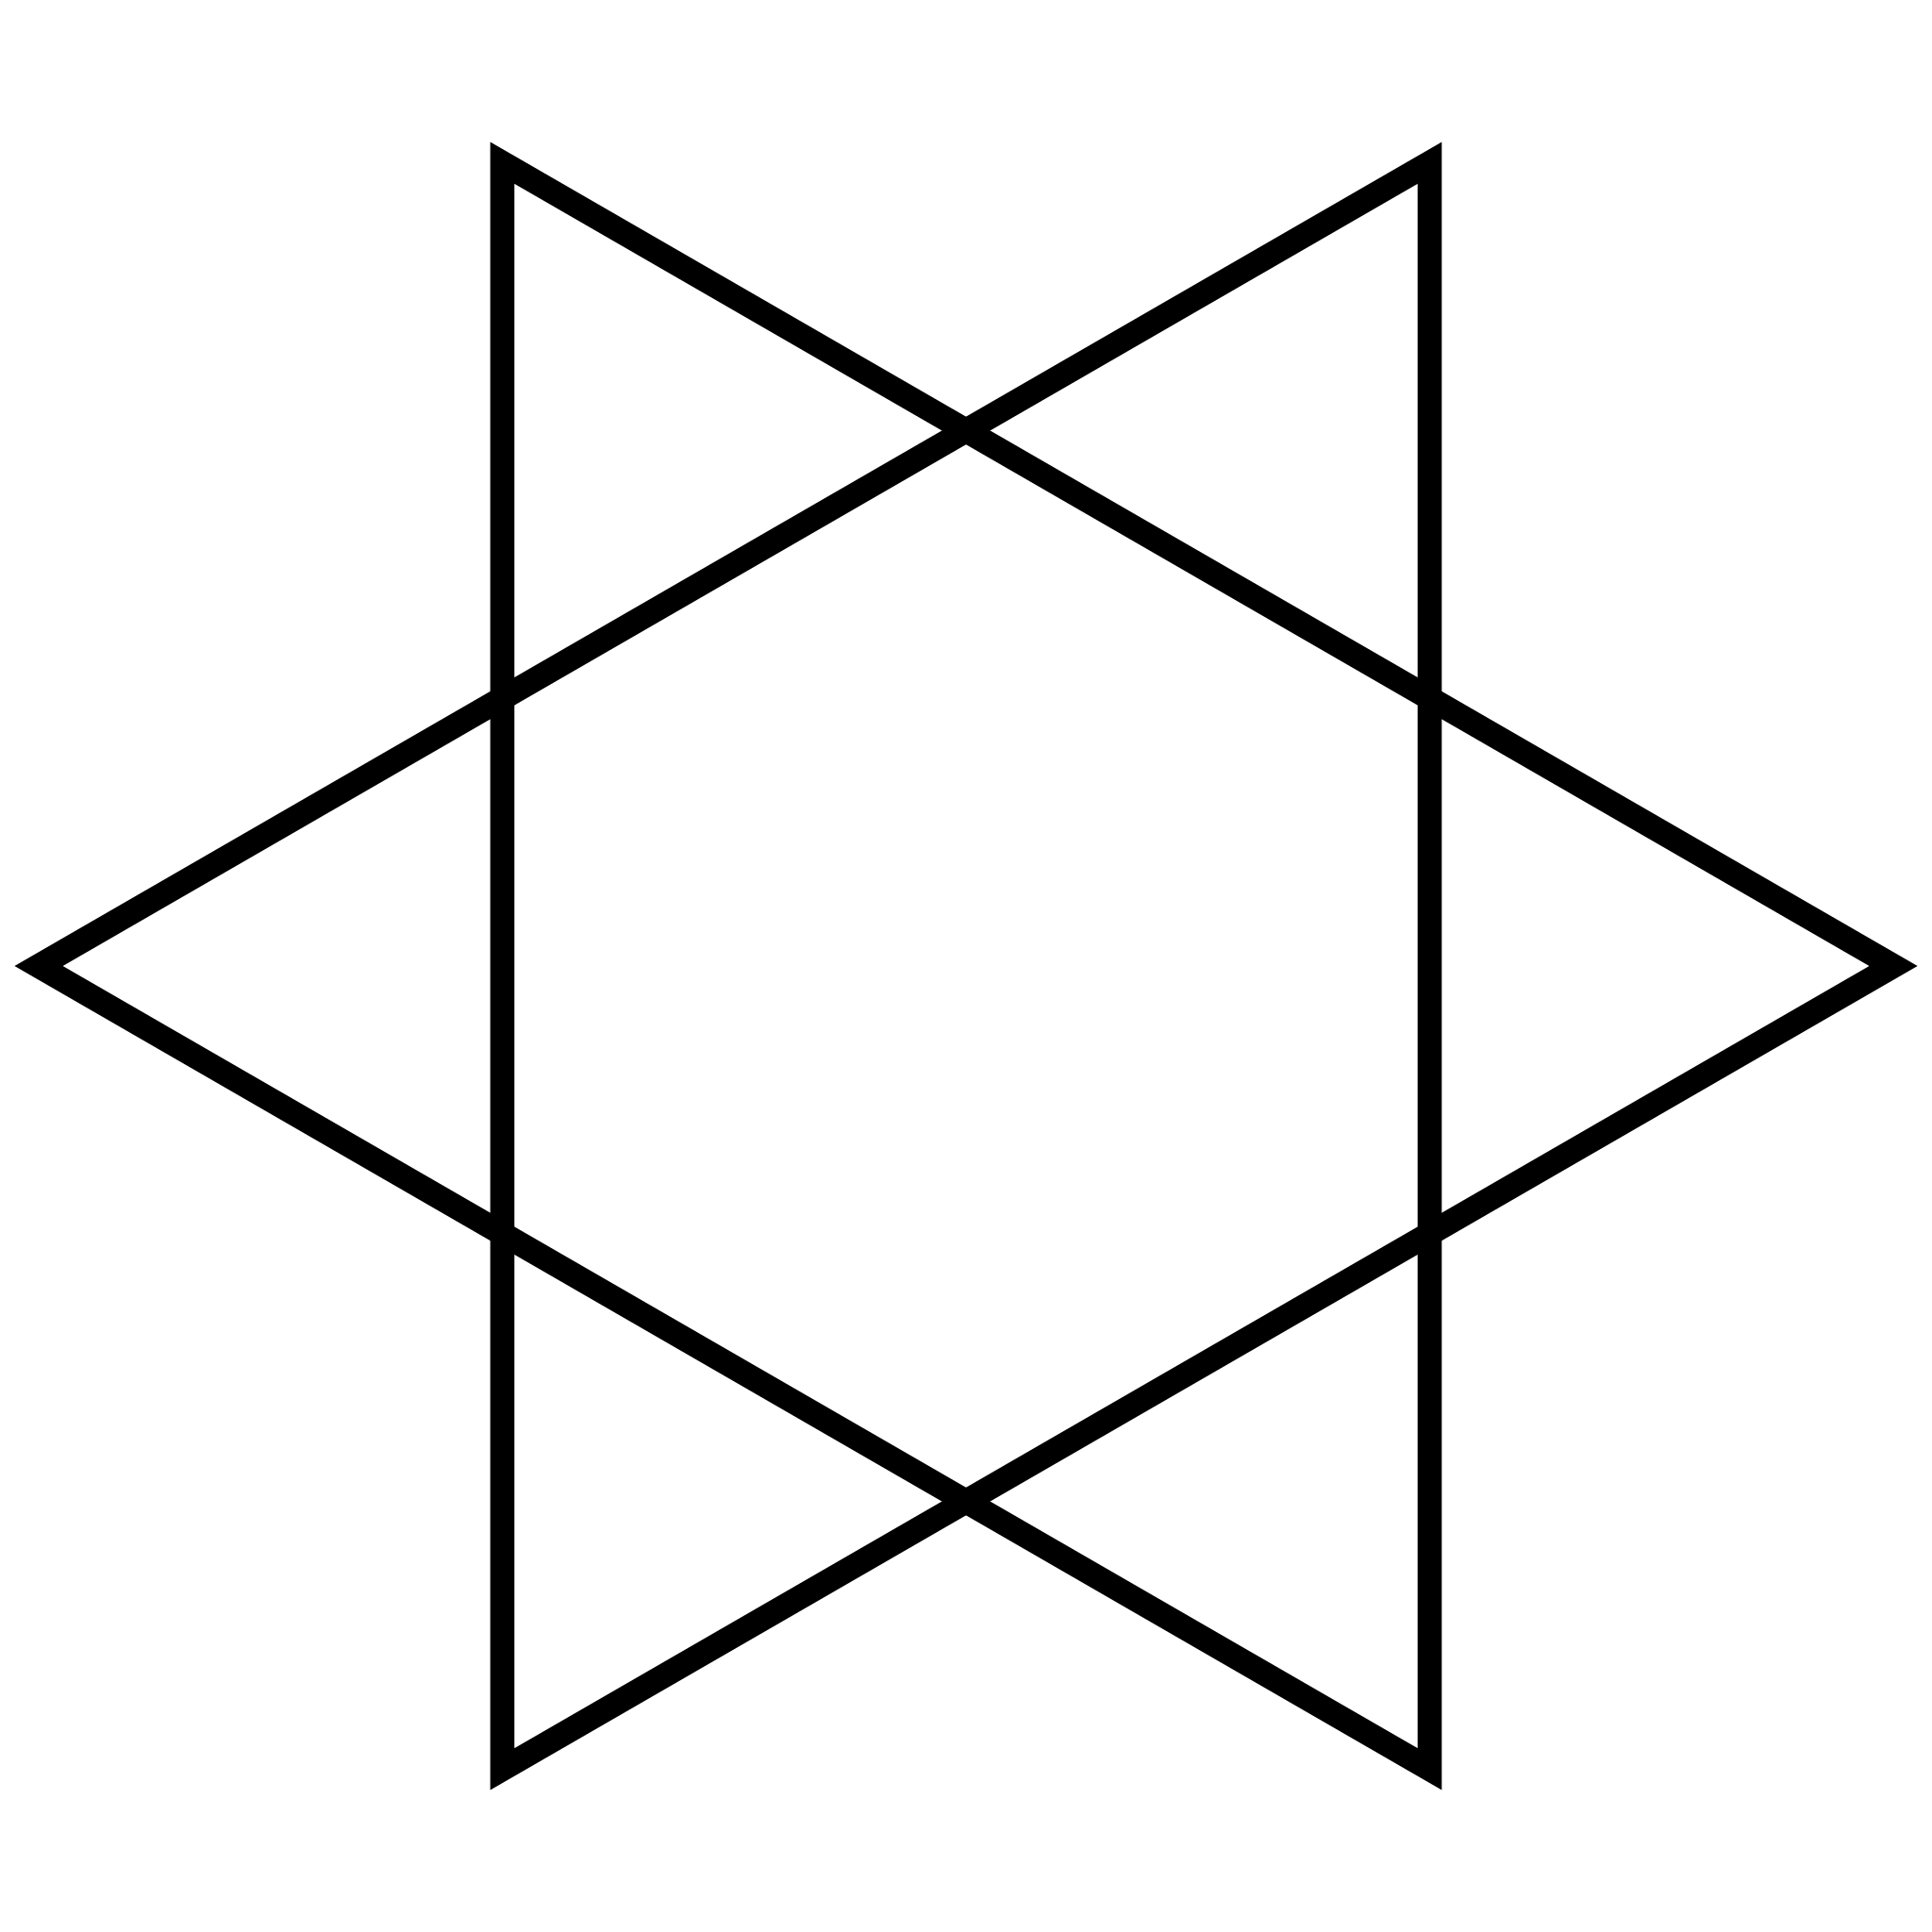 File:Iching-hexagram-02.svg - Wikimedia Commons